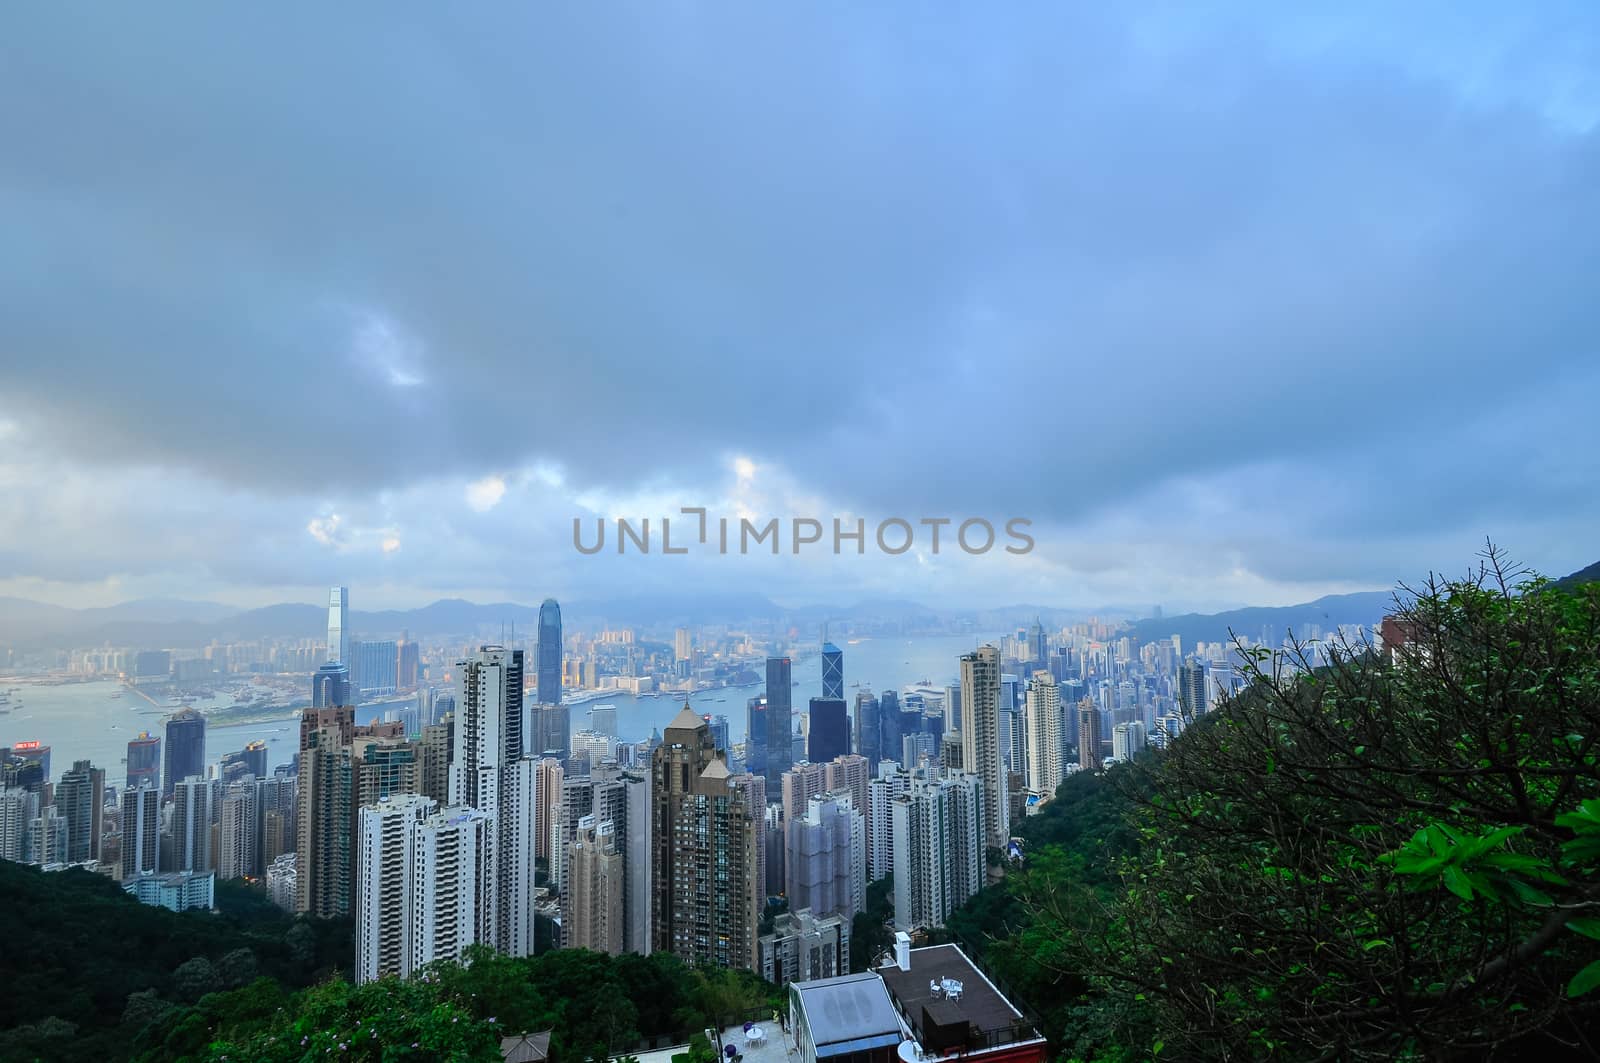 Hong Kong Island from Victoria Peak Park by weltreisendertj